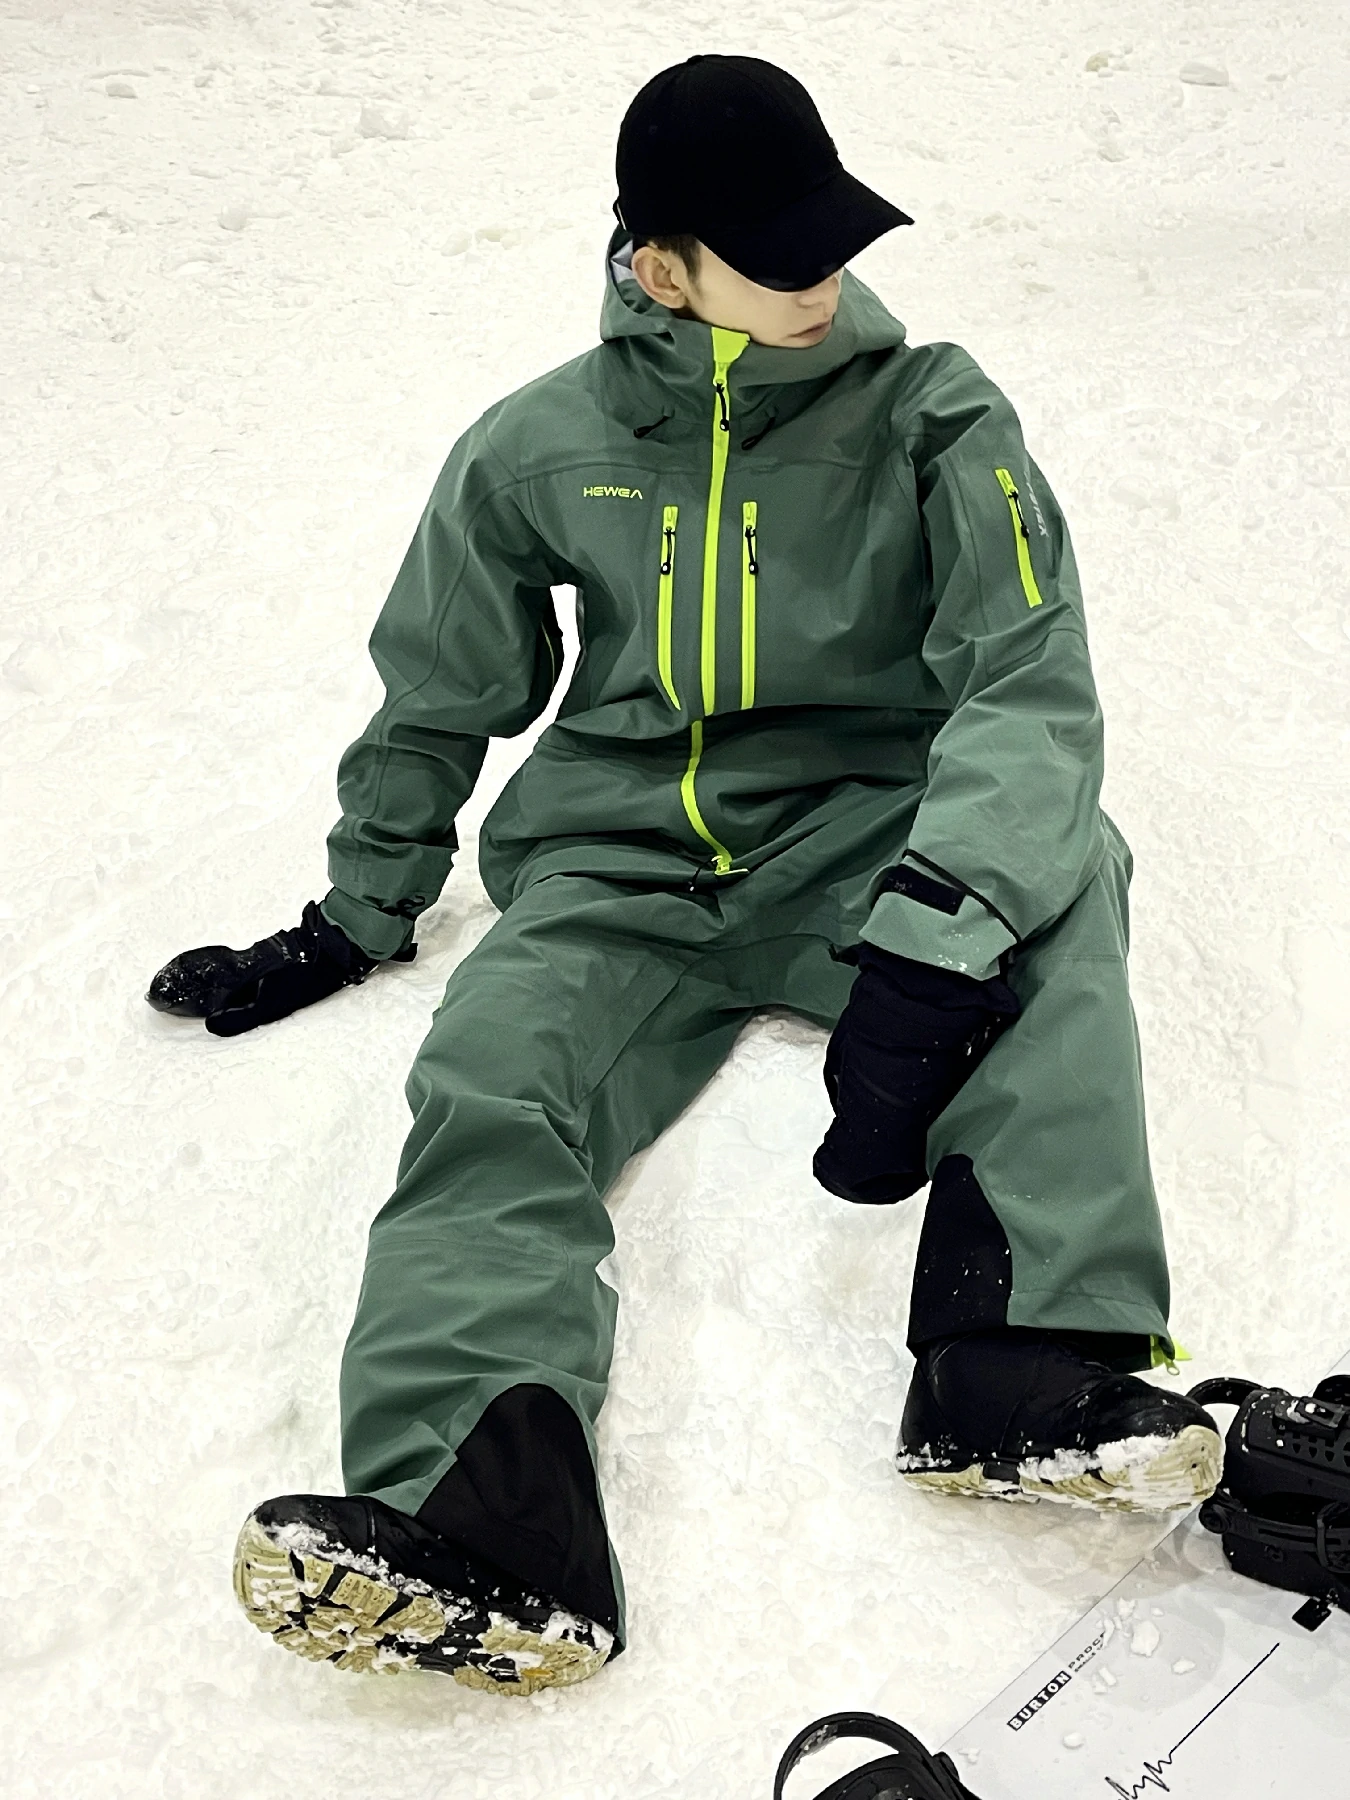 DY23001/23002 unisex ski suits